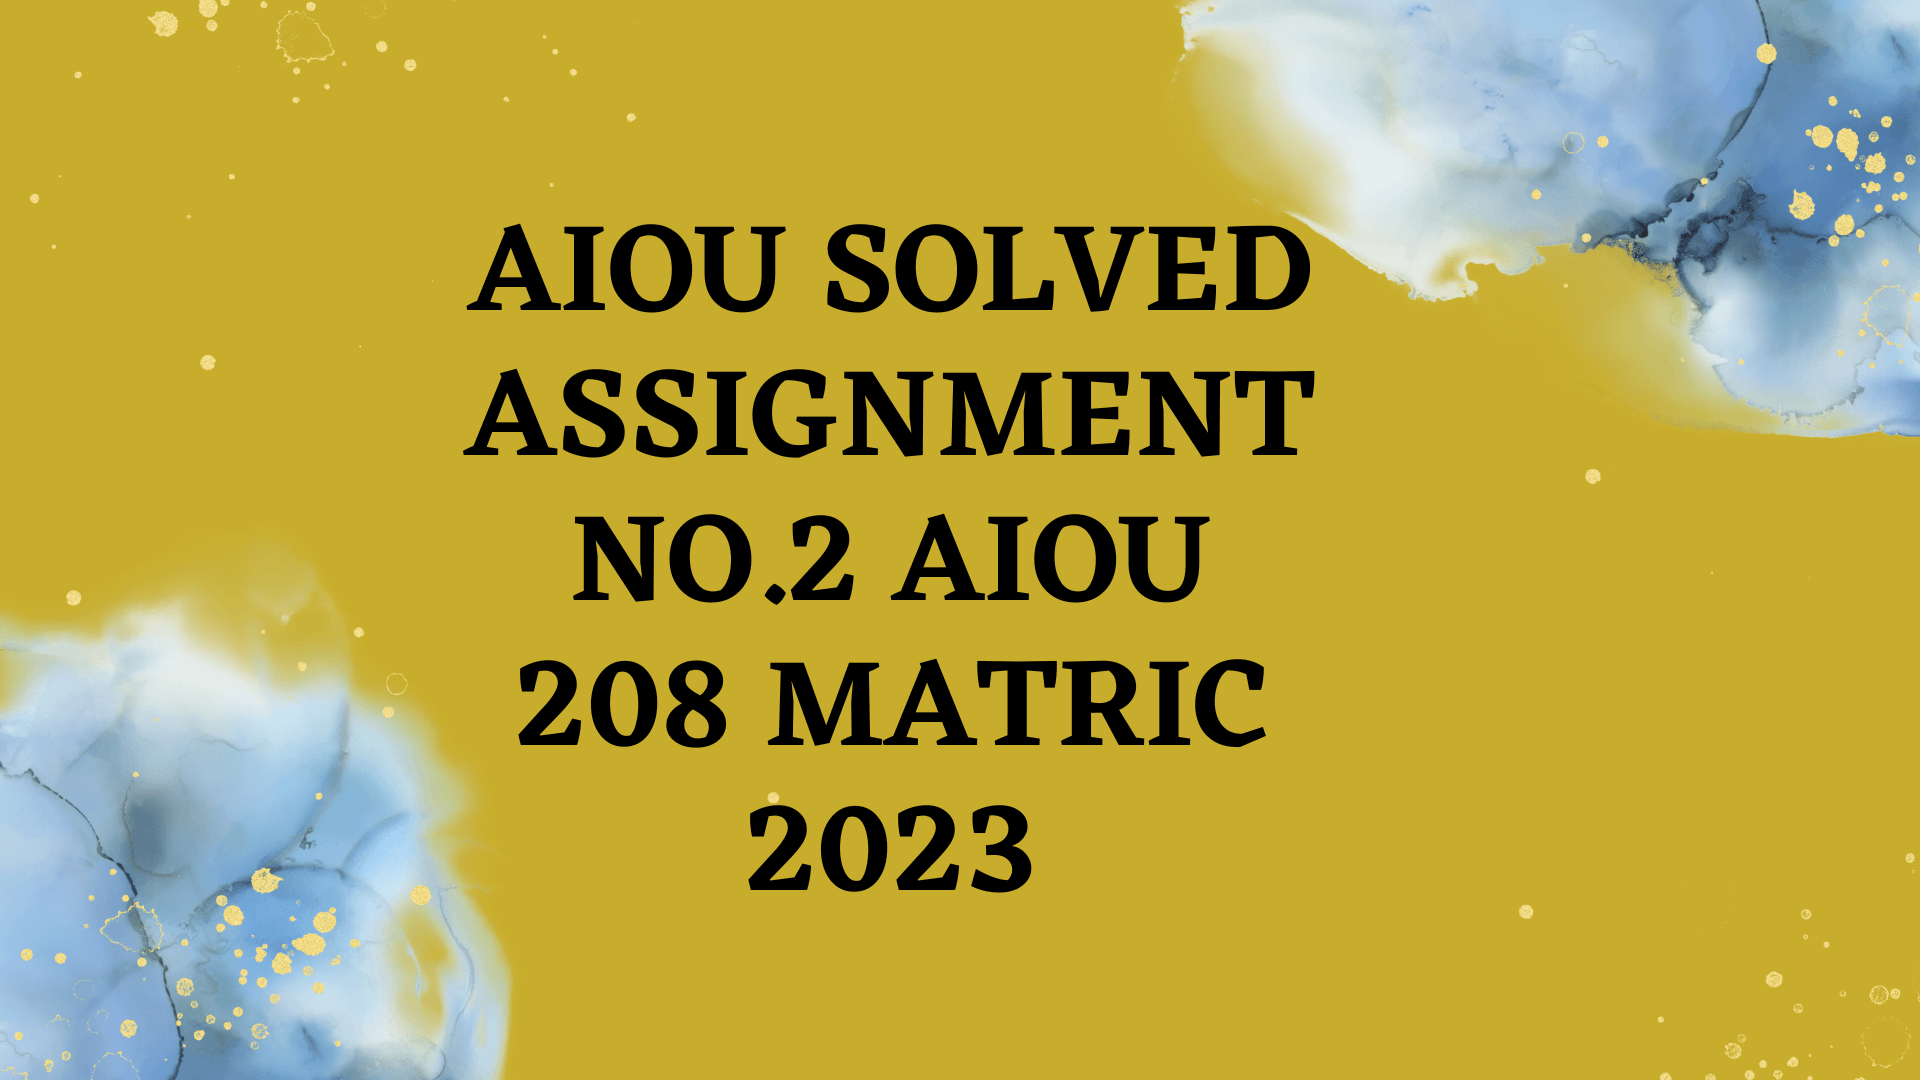 Assignment No.2 AIOU 208 Matric